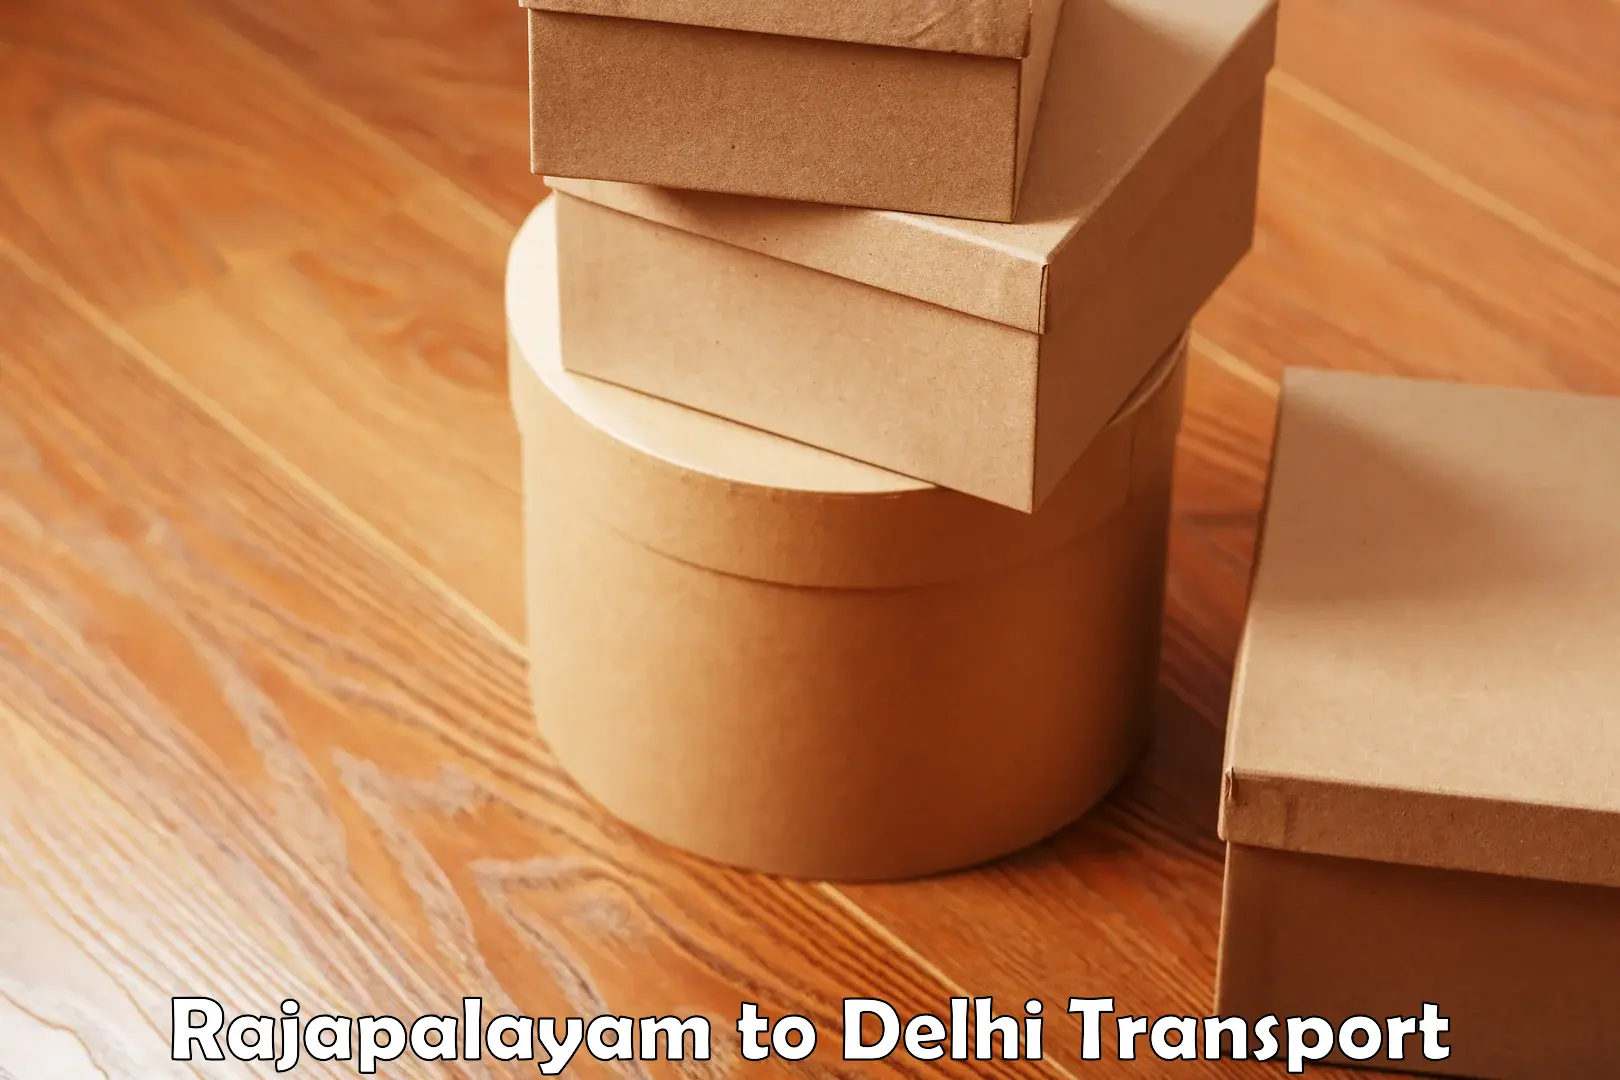 Shipping partner Rajapalayam to Delhi